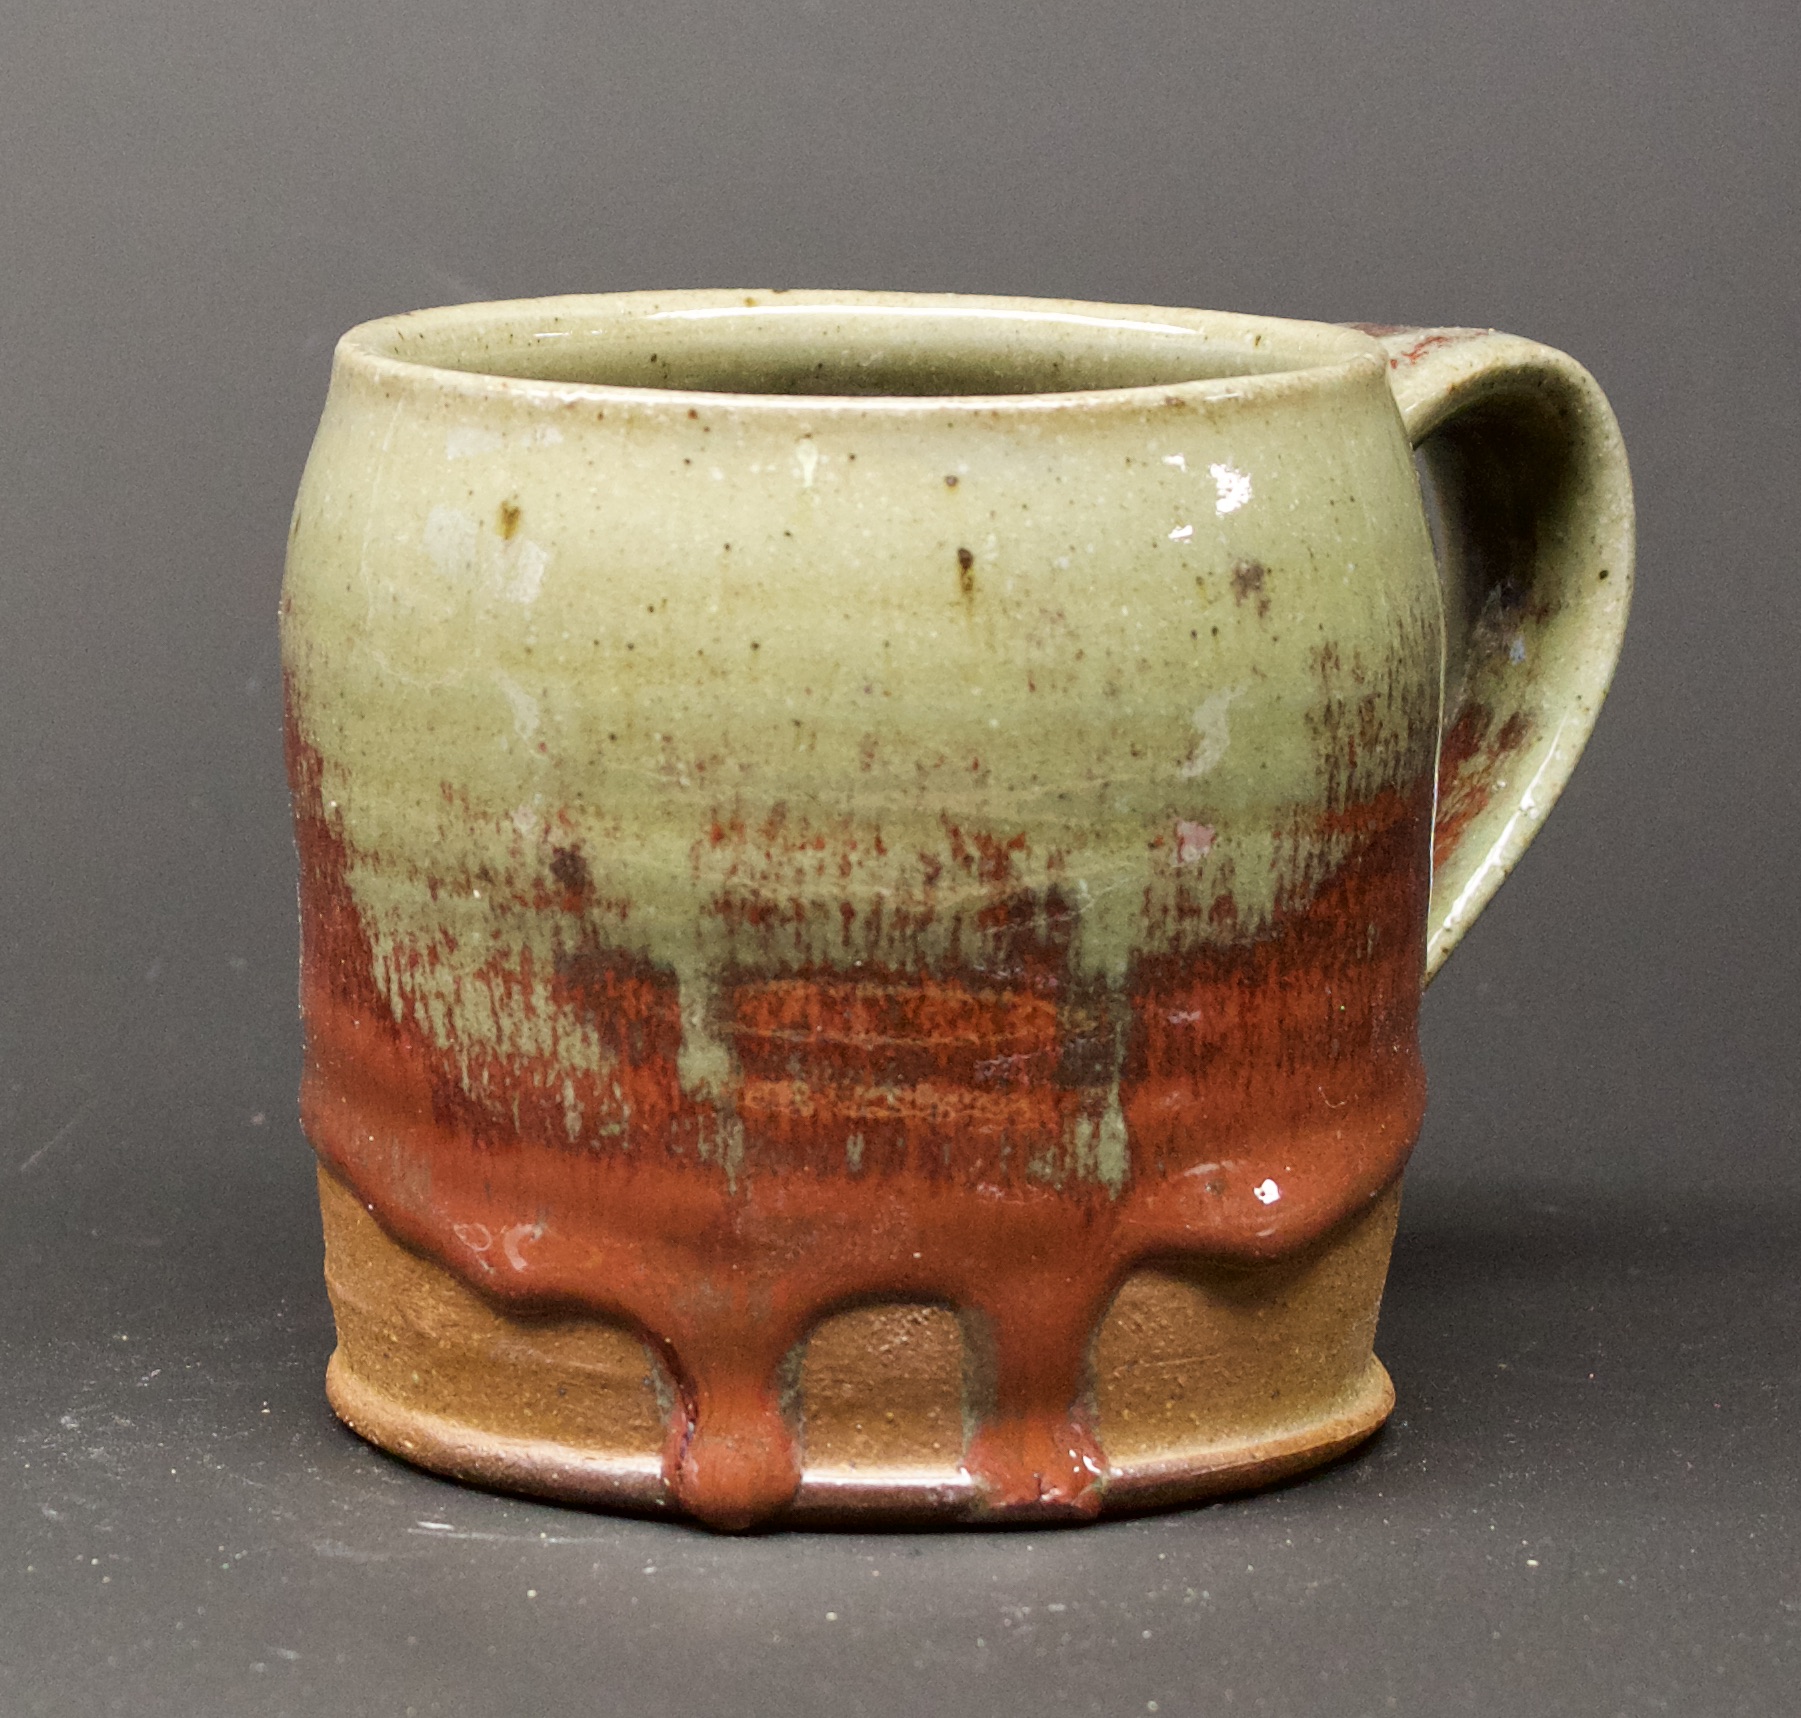 40. Mug, Oribe & red glaze
4" x 4"
$50